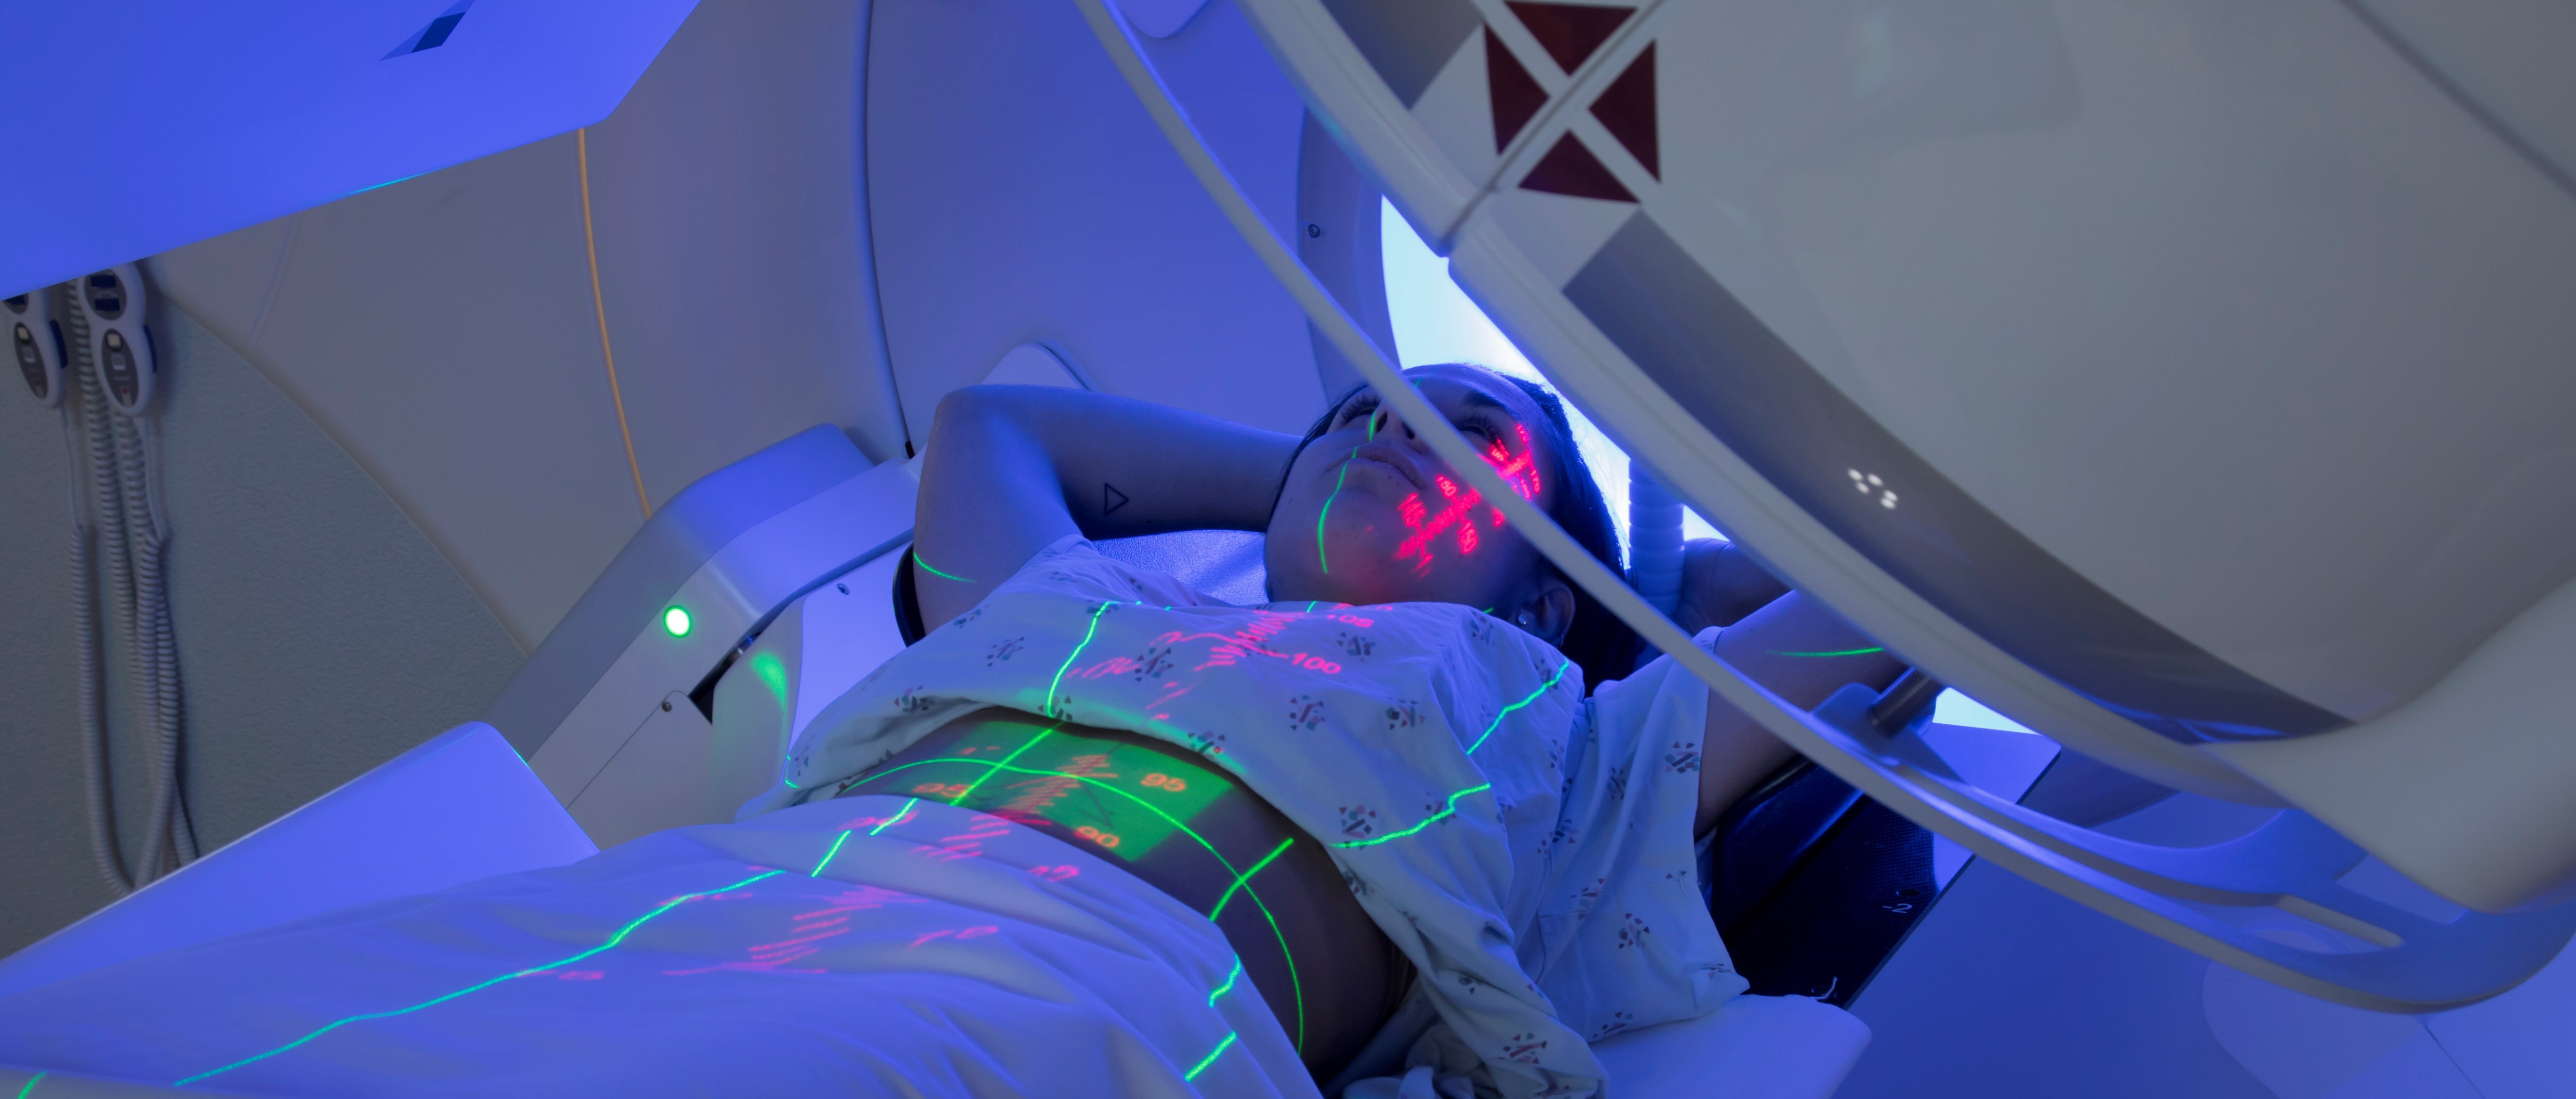 Halvbild på en person som ligger i en strålningsmaskin och får strålningsbehandling. Gröna och röda ljusmarkeringar syns på personens kropp.